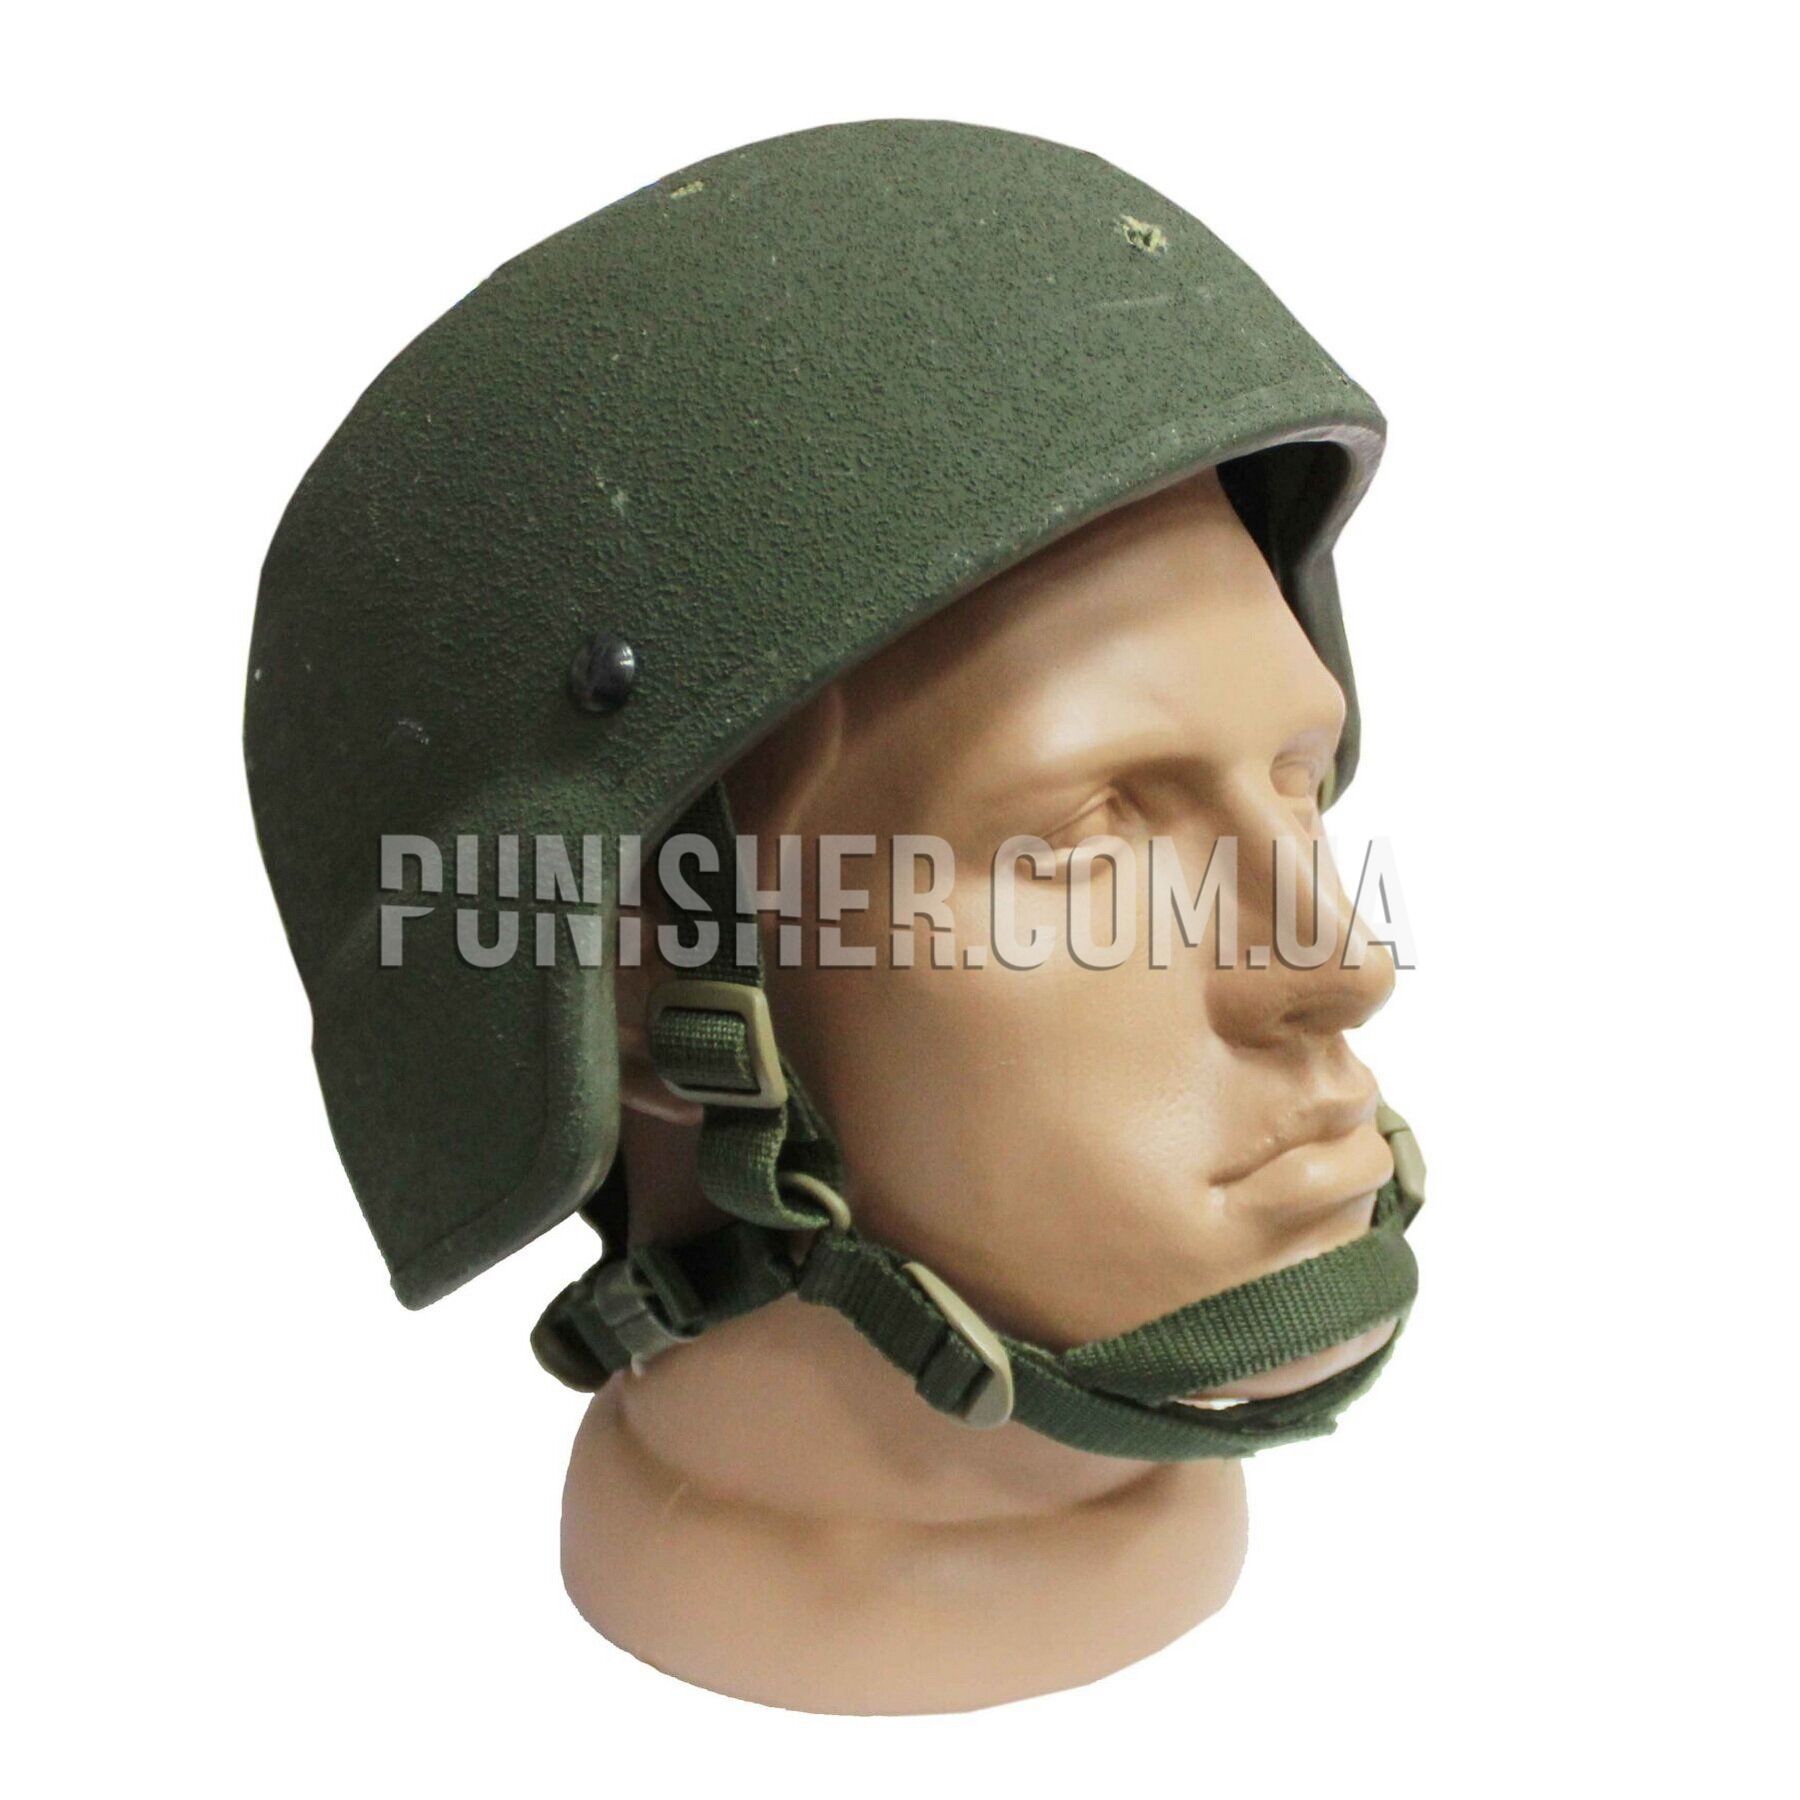 ACH MICH 2000 IIIA Helmet (Used)